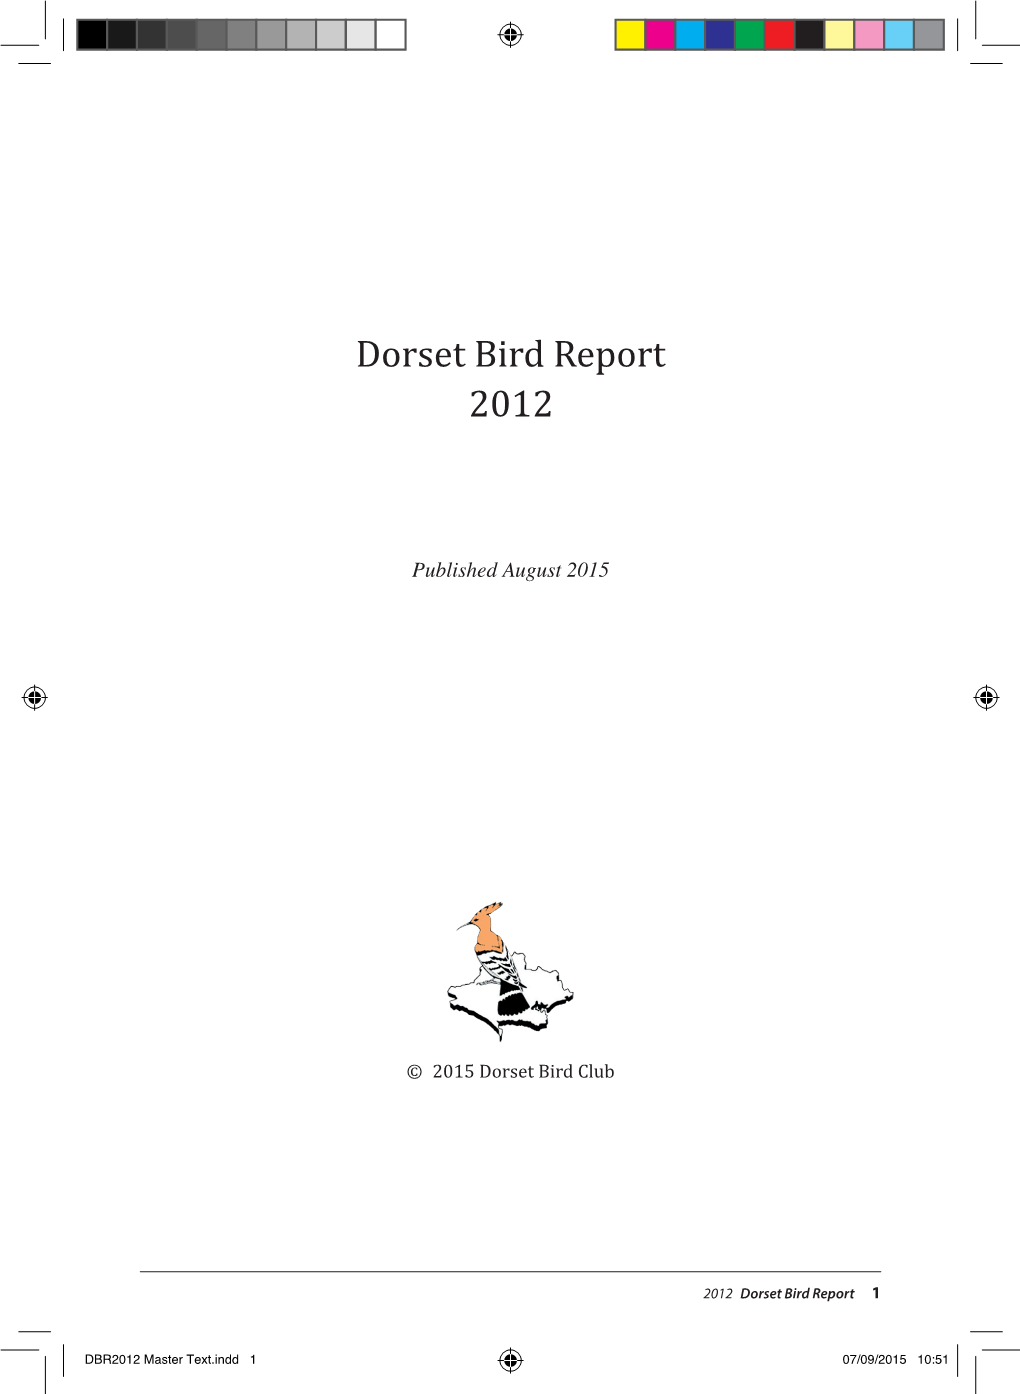 Dorset Bird Report 2012